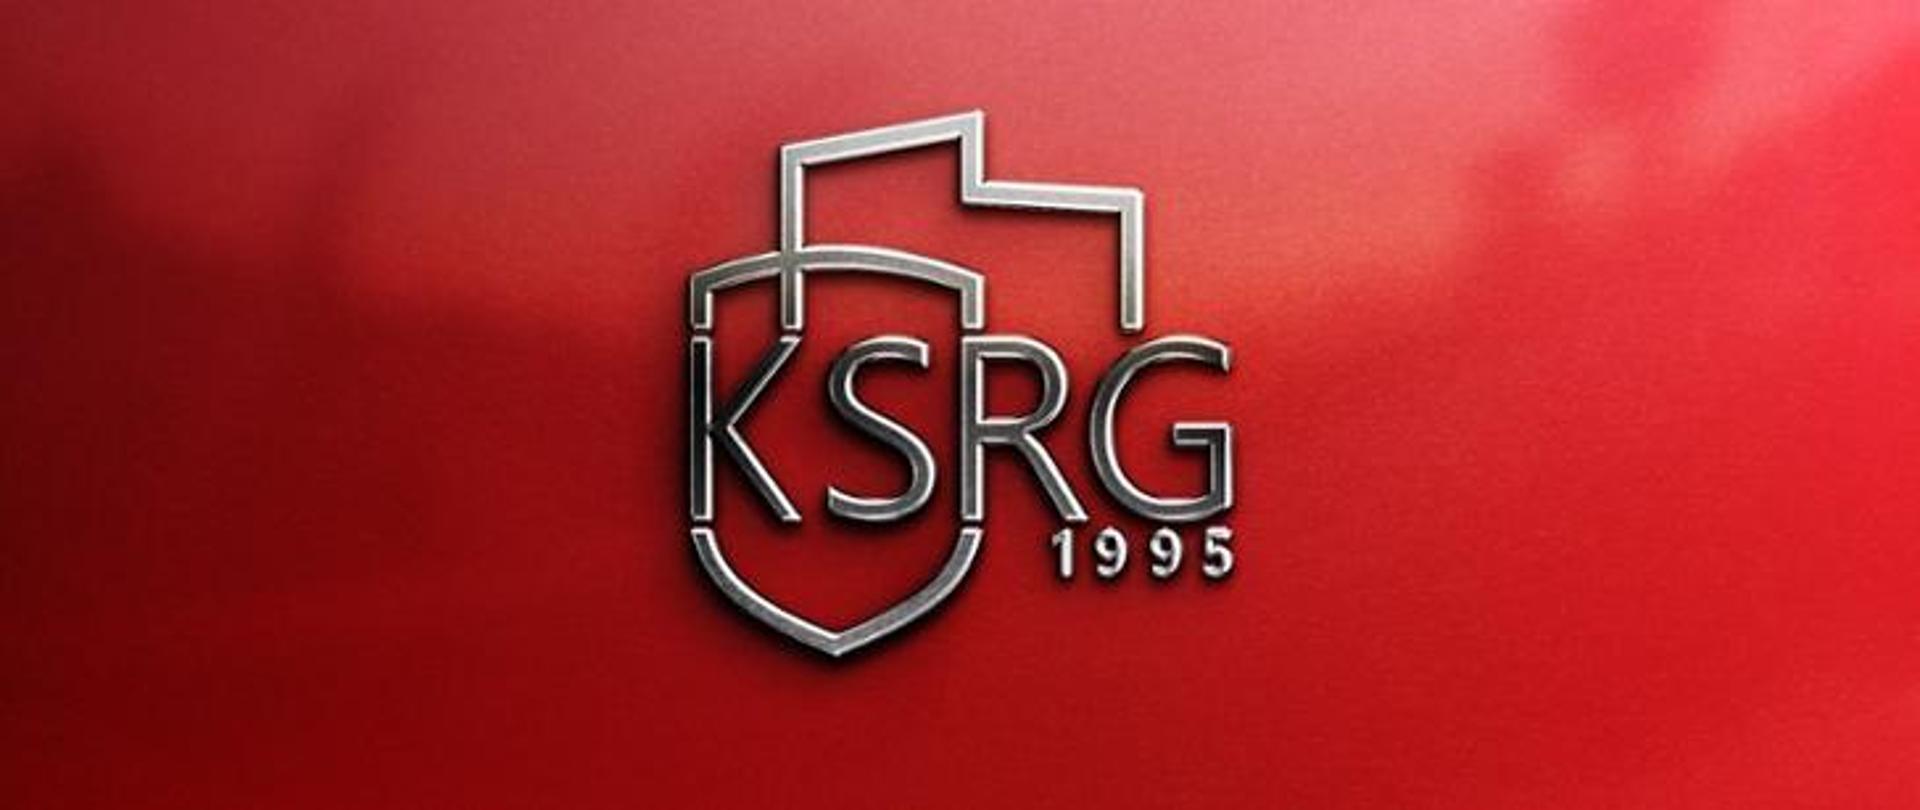 Krajowy System Ratowniczo-Gaśniczy - logotyp KSRG na czerwonym tle